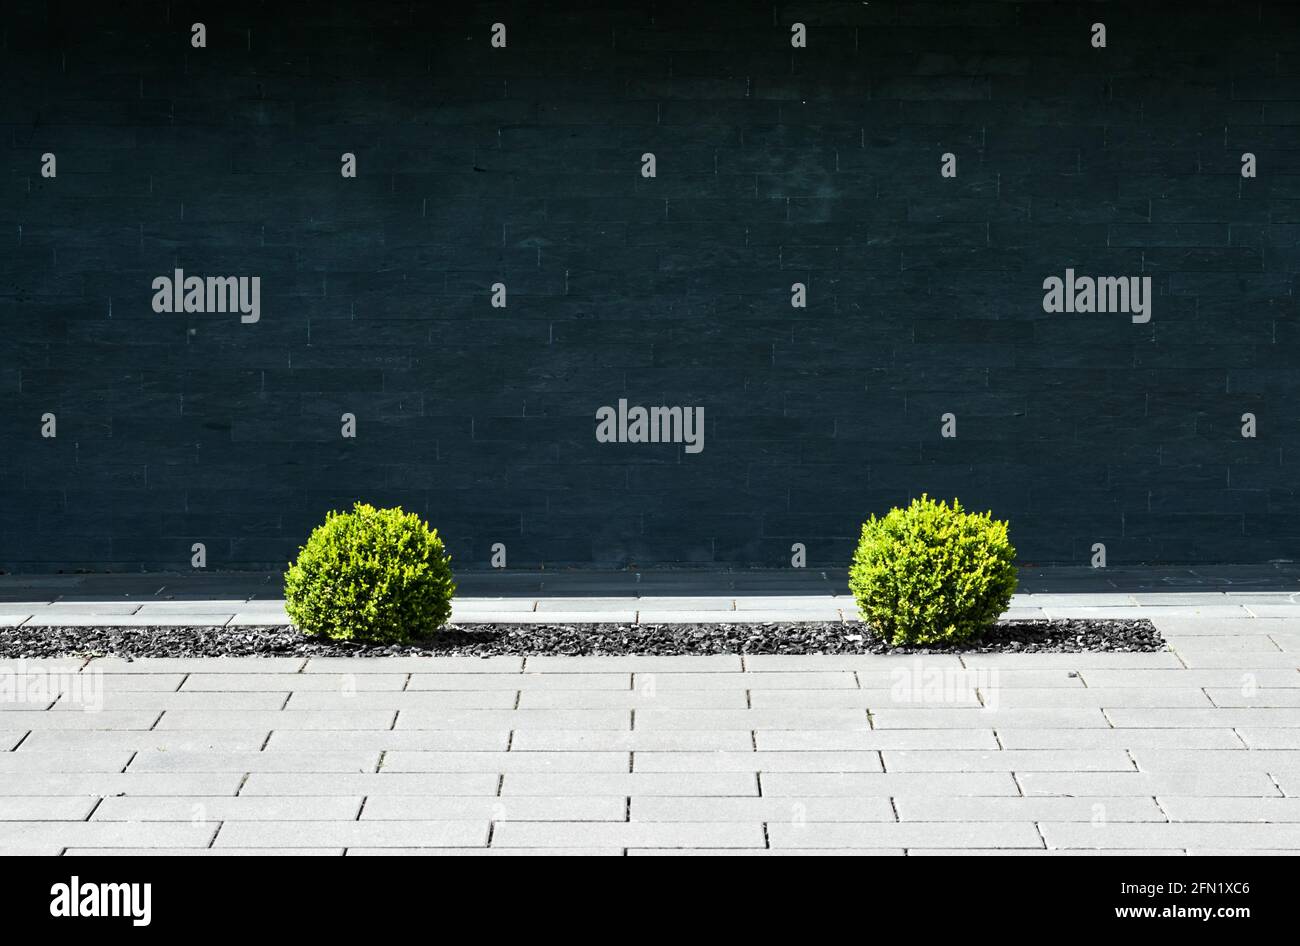 Kleine grüne Büsche in einem toten Kiesbett in einem grauen Gehsteig vor einer schwarzen Steinwand, minimalistisches depressives abstraktes Konzept Stockfoto